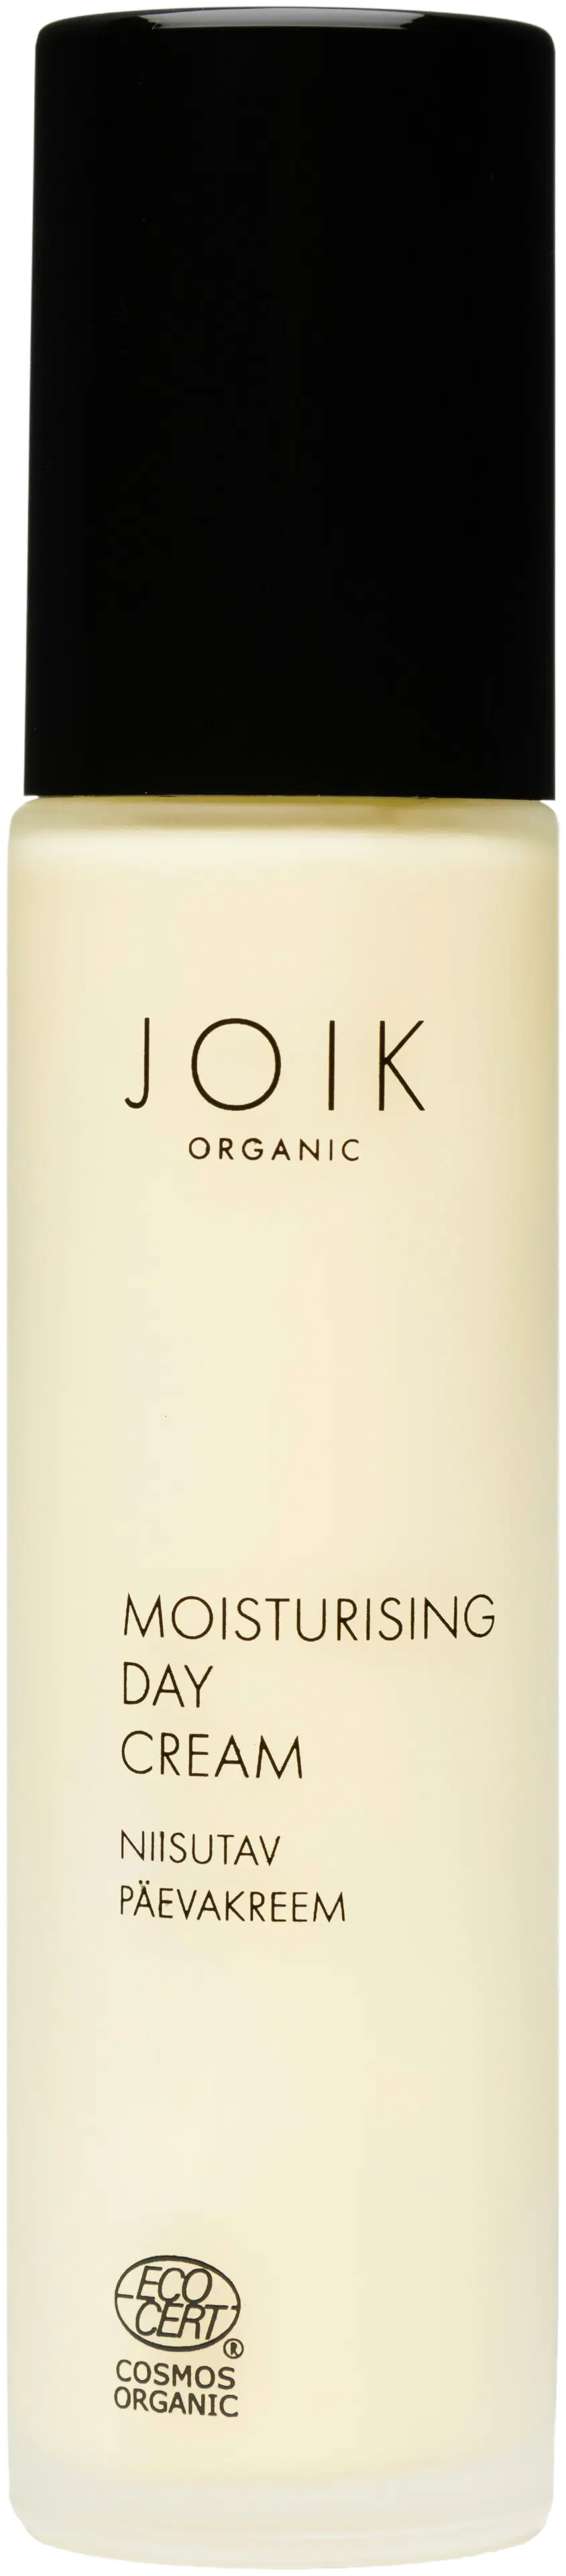 JOIK Organic Moisturising Day Cream Päivävoide 50 ml